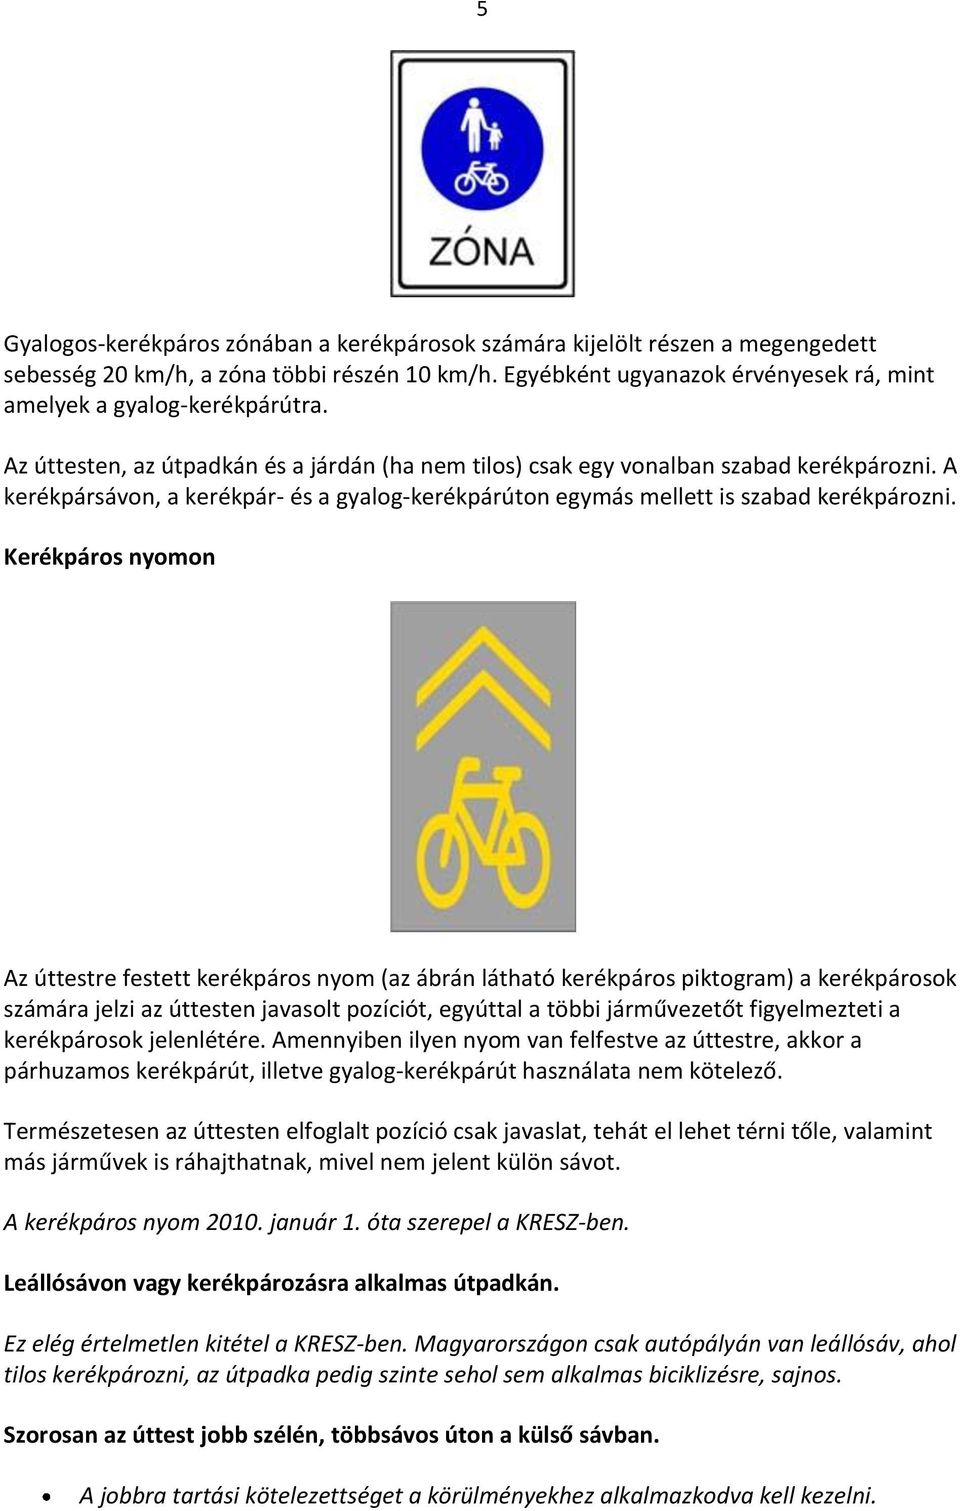 Kerékpáros nyomon Az úttestre festett kerékpáros nyom (az ábrán látható kerékpáros piktogram) a kerékpárosok számára jelzi az úttesten javasolt pozíciót, egyúttal a többi járművezetőt figyelmezteti a